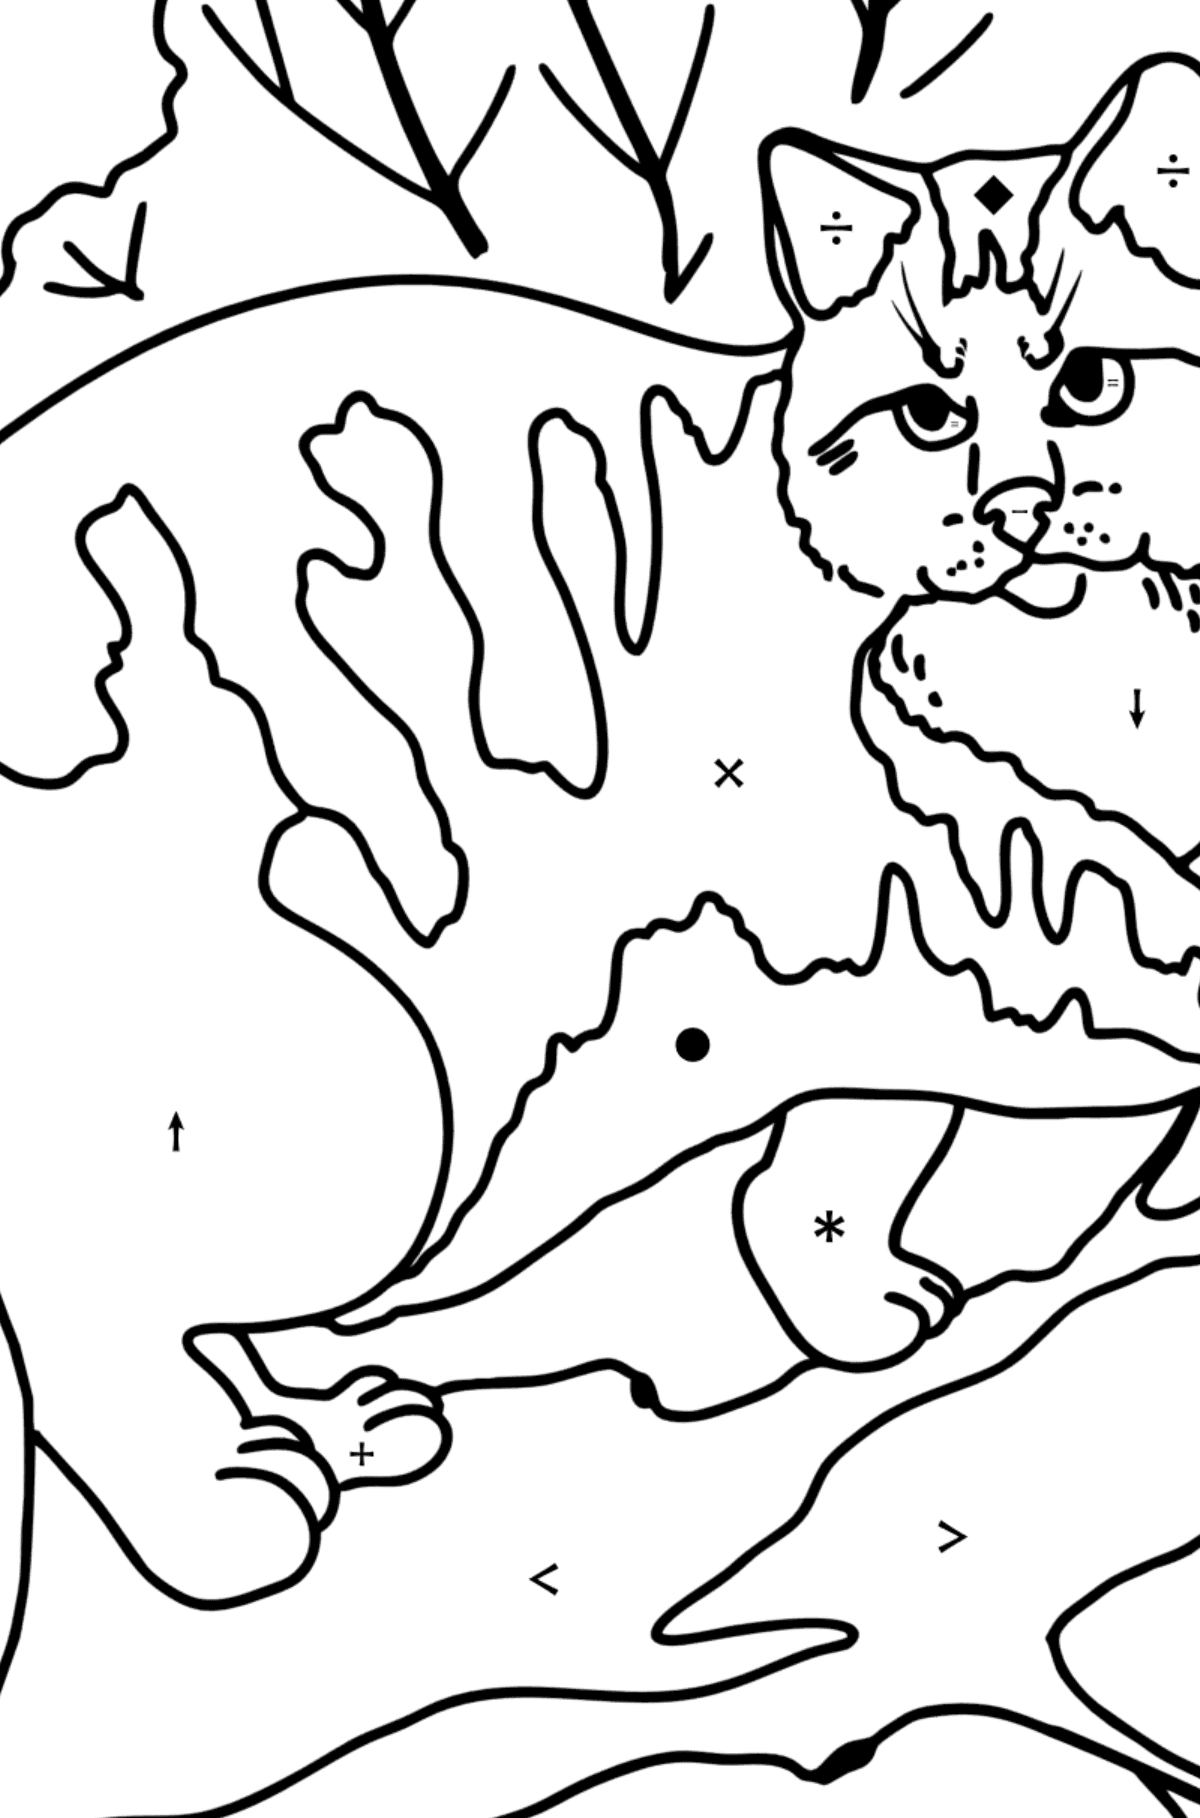 Coloriage - Chat de la forêt sauvage - Coloriage par Symboles pour les Enfants